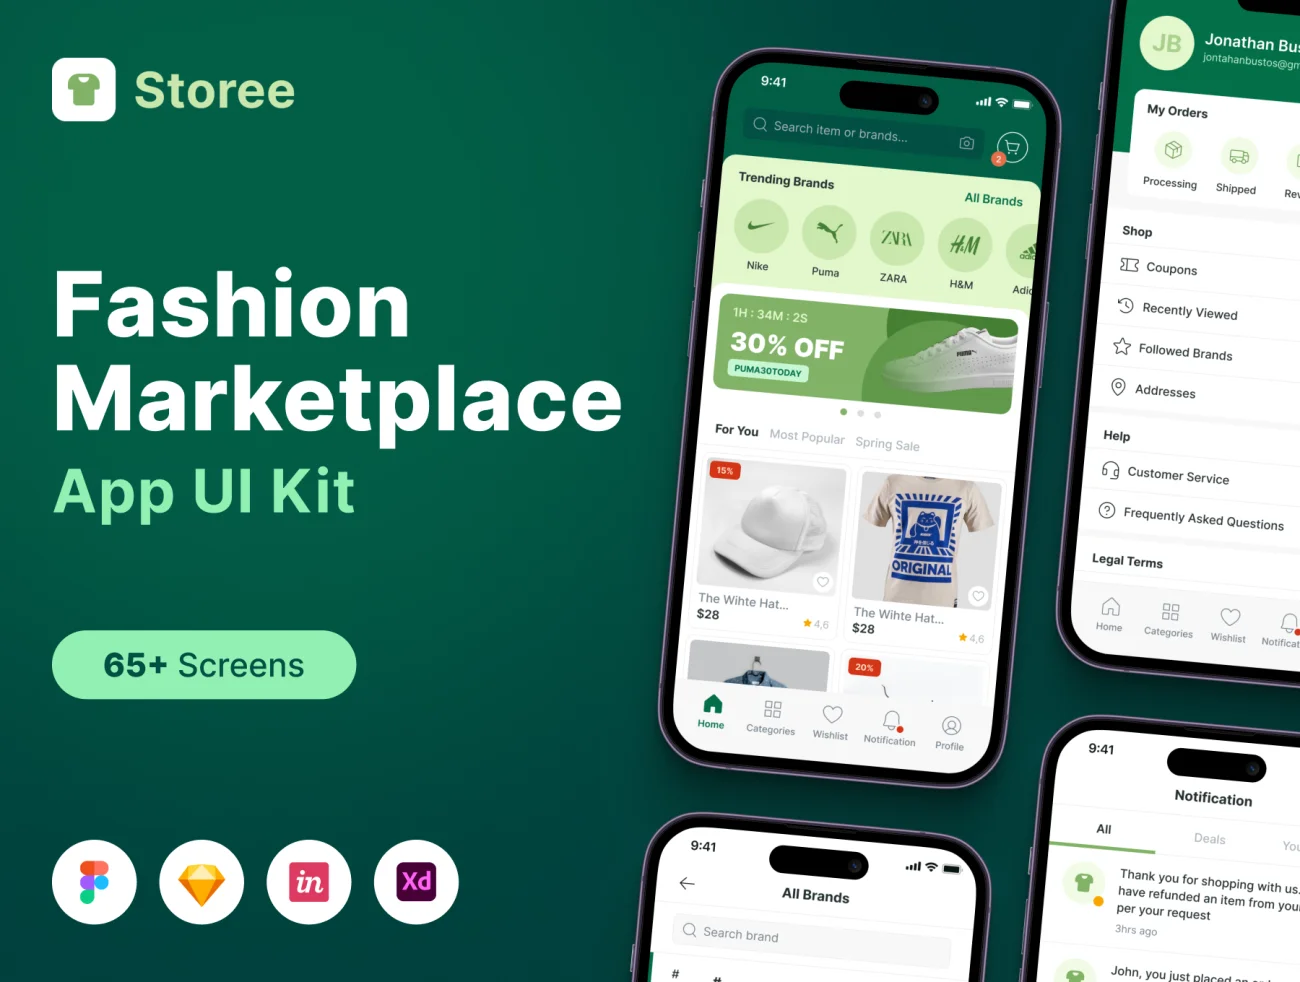 时尚市场App UI套件 时尚市场App UI套件 Fashion Marketplace Apps UI KIT sketch, xd, figma, lunacy格式-UI/UX、ui套件、应用、网购、详情-到位啦UI